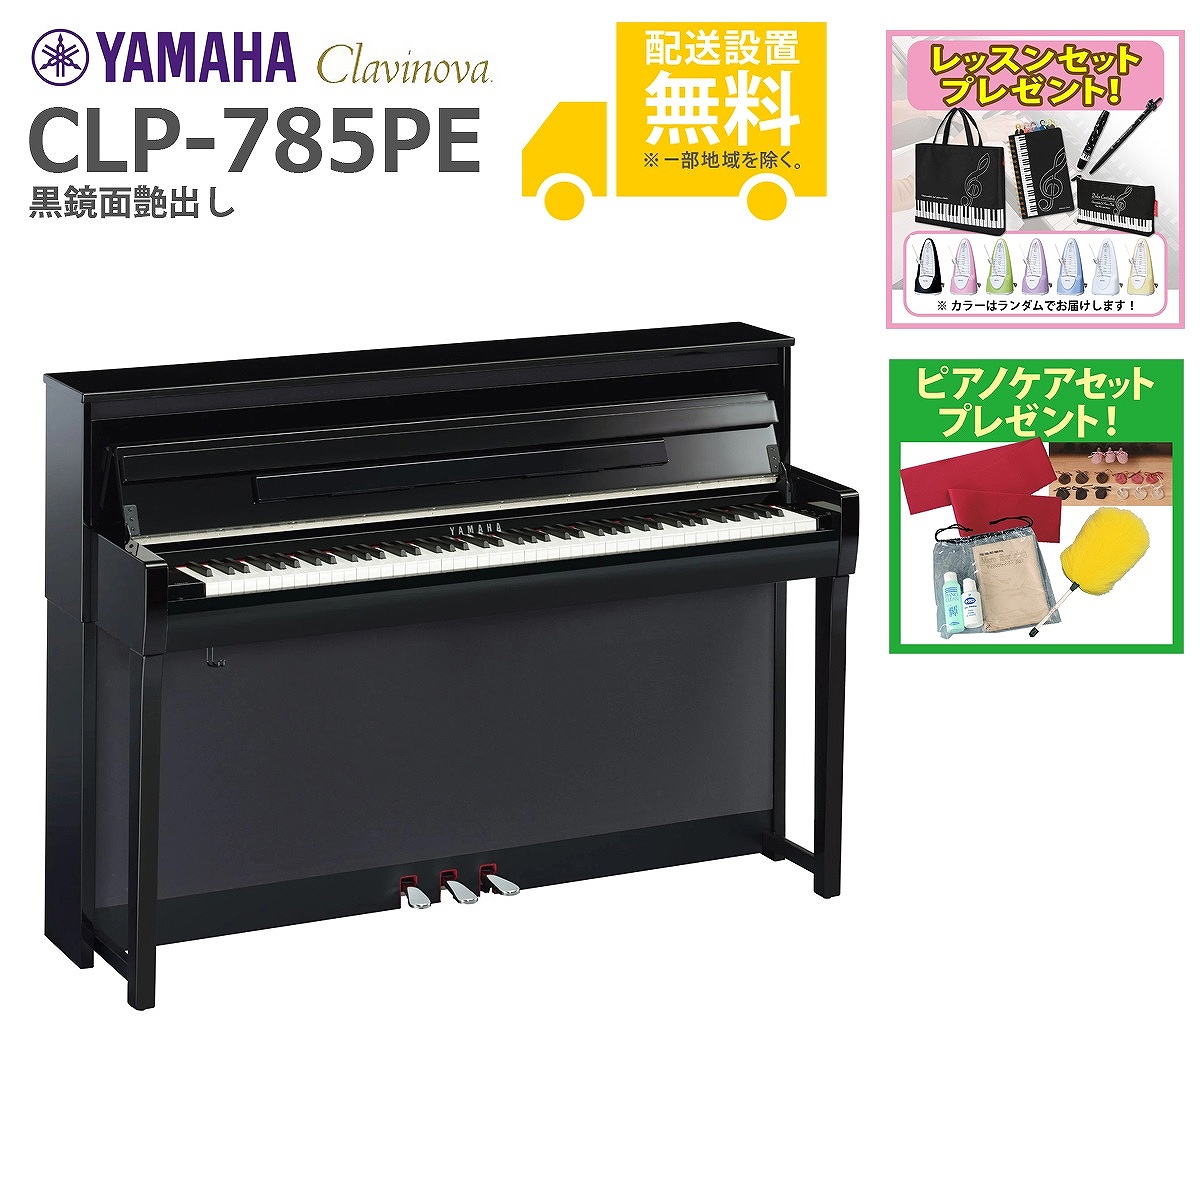 全国組立設置無料)YAMAHA CLP-785PE 黒鏡面艶出し 電子ピアノ(レッスン＆ピアノケアセット プレゼント：lessonset+set78333)(代引不可) イシバシ楽器